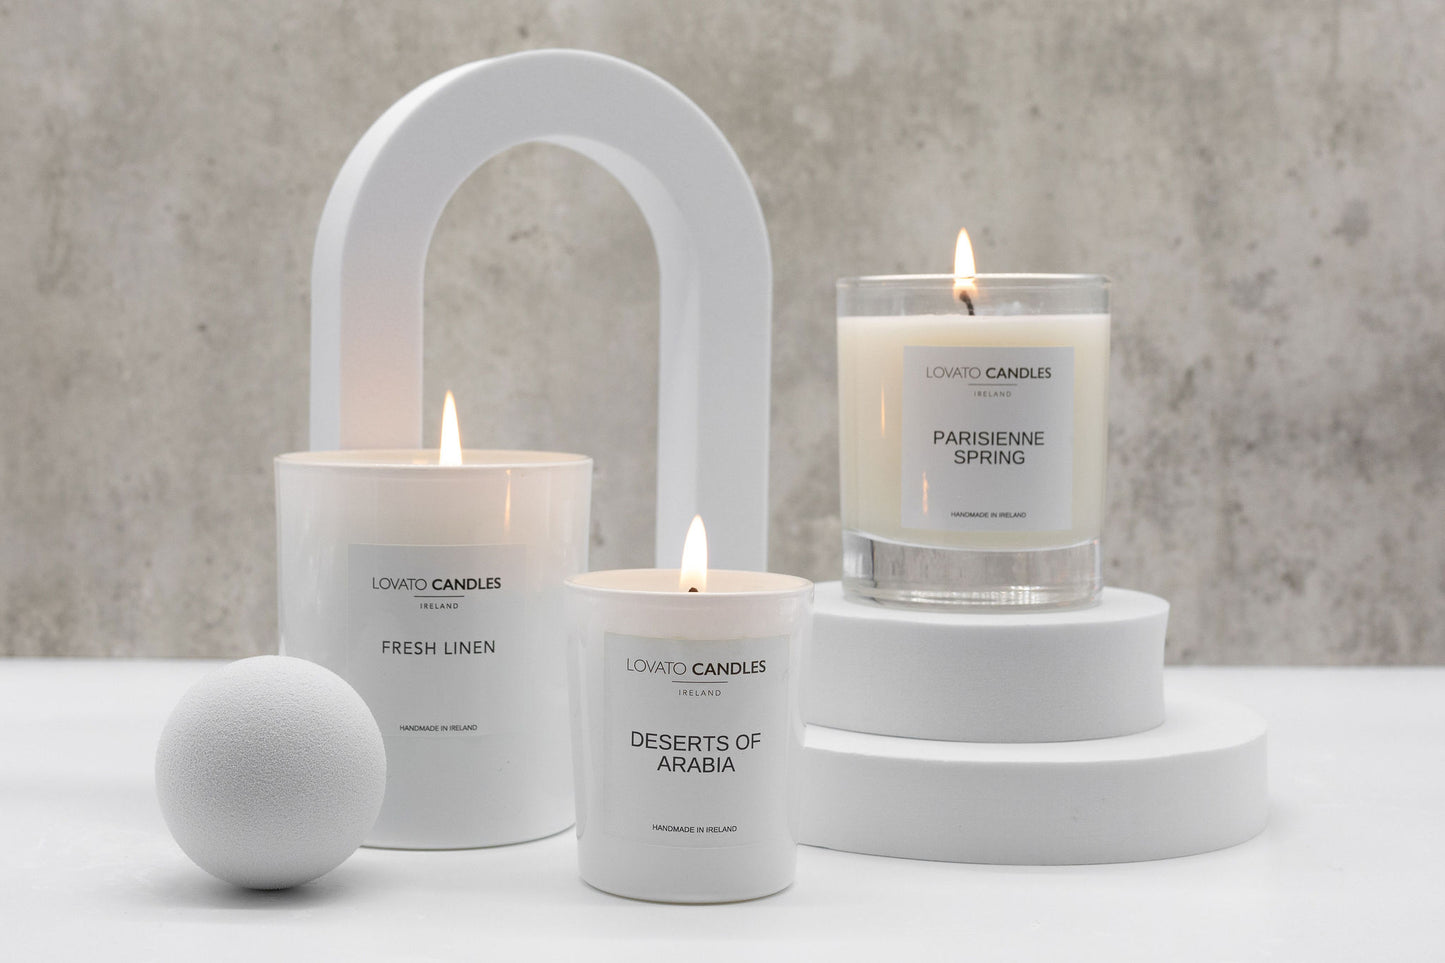 Luxury White Candle - Mandarin & Sandalwood